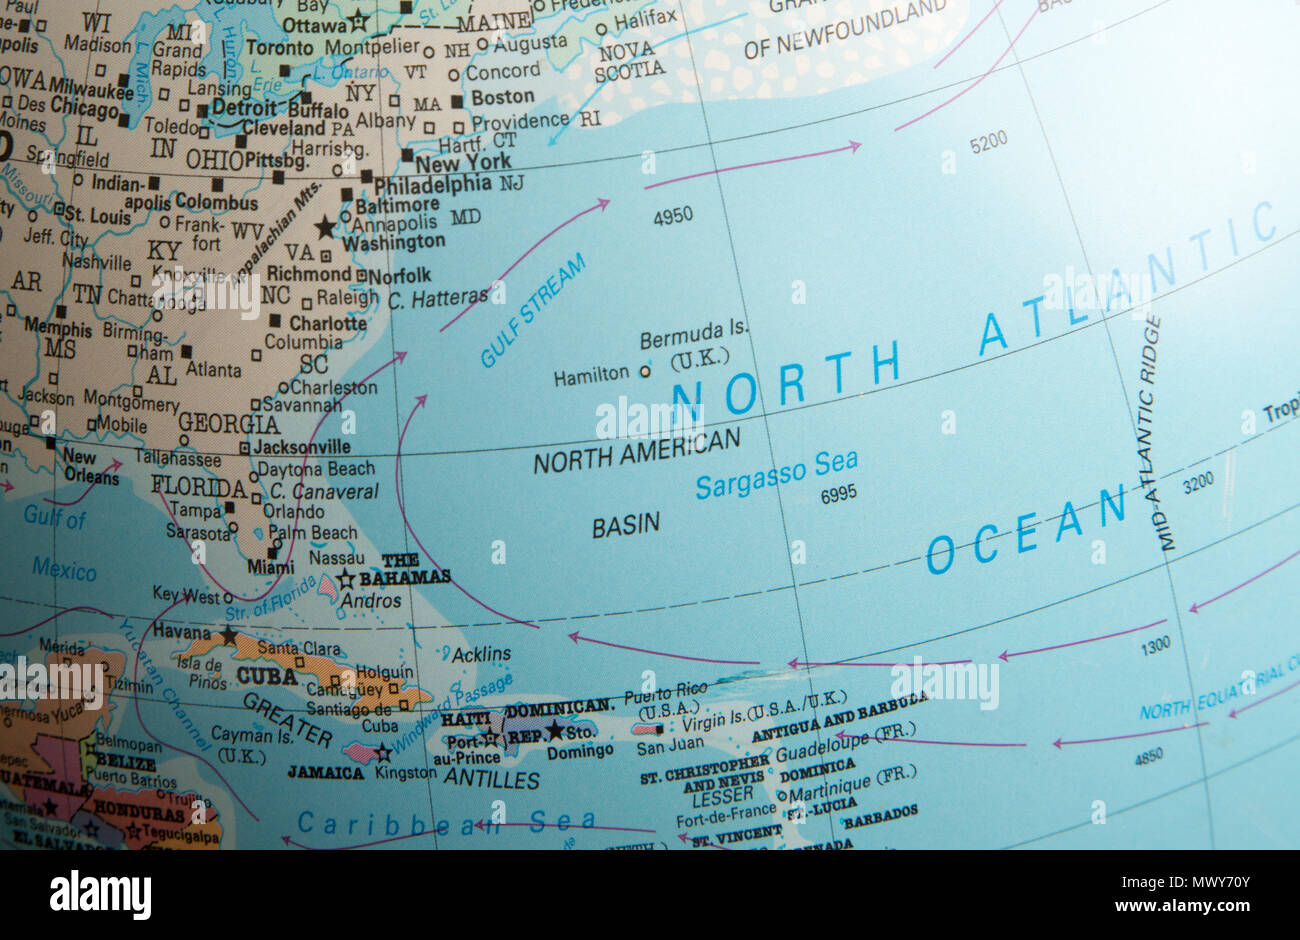 North Atlantic Ocean Karte auf einem Globus am Golfstrom Meeresströmung und Sargassosee konzentriert Stockfoto